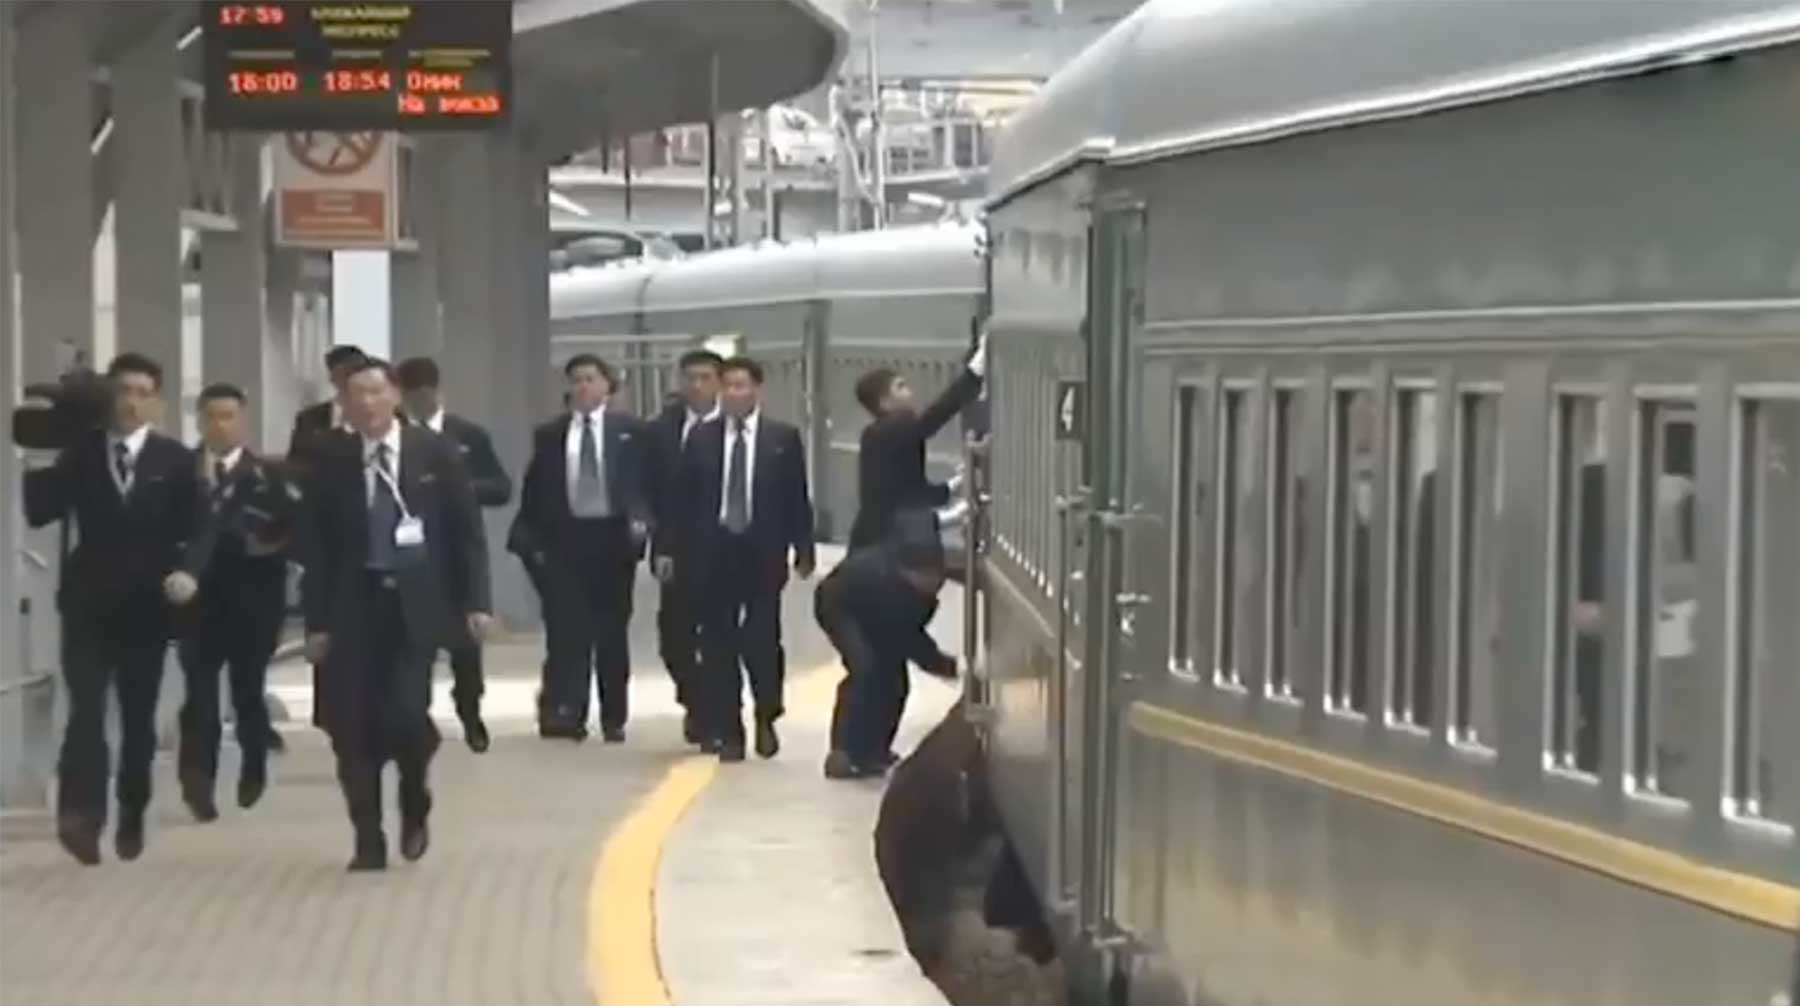 Dailystorm - Бронепоезд Ким Чен Ына вытирали на ходу: северокорейский вождь приехал во Владивосток